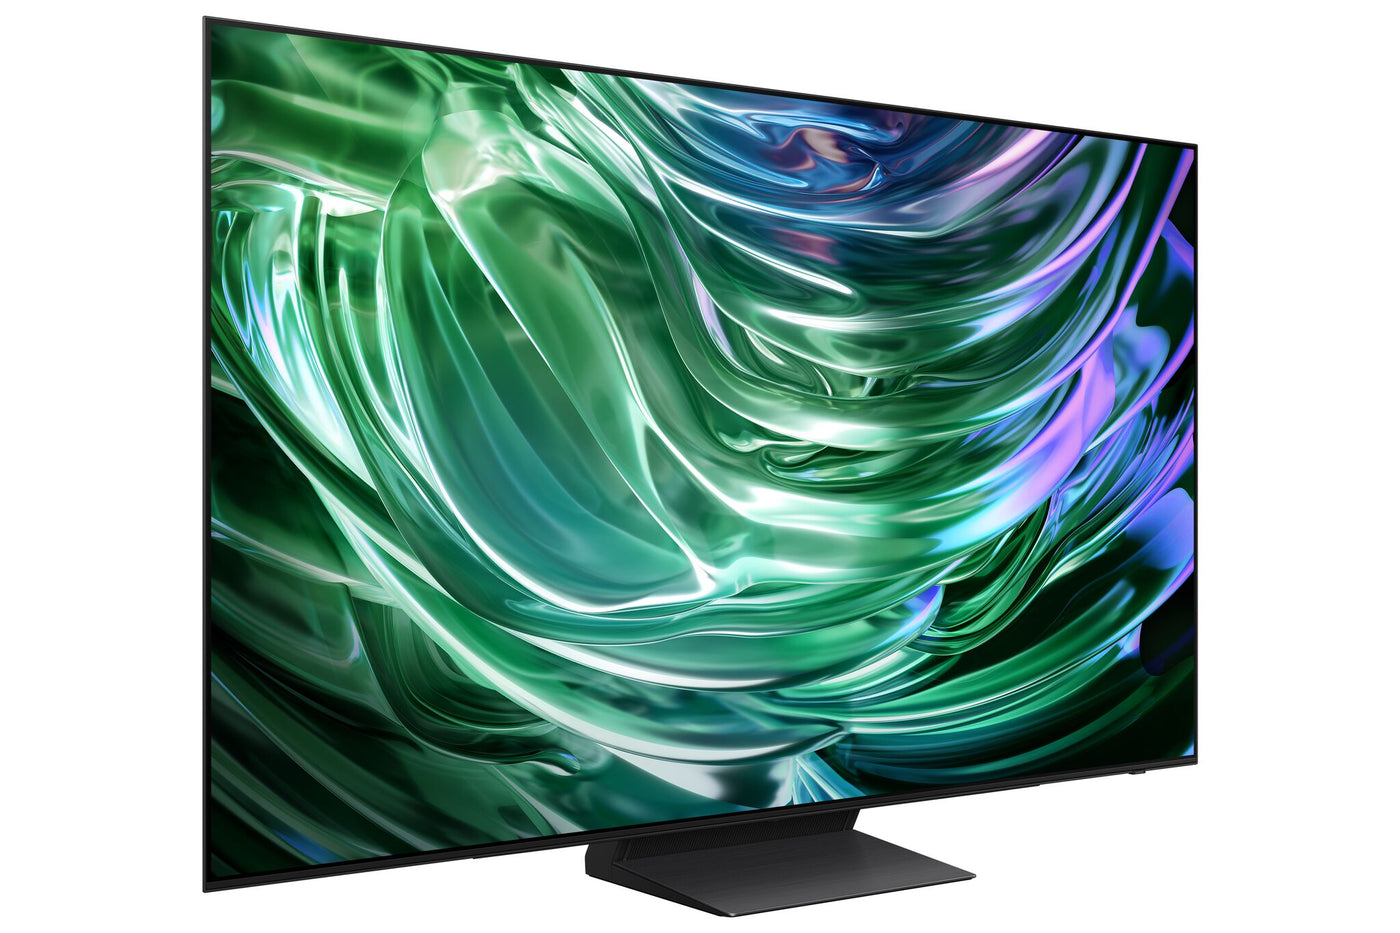 Samsung 55” OLED 4K Tizen Smart TV S90D - QN55S90DAFXZC